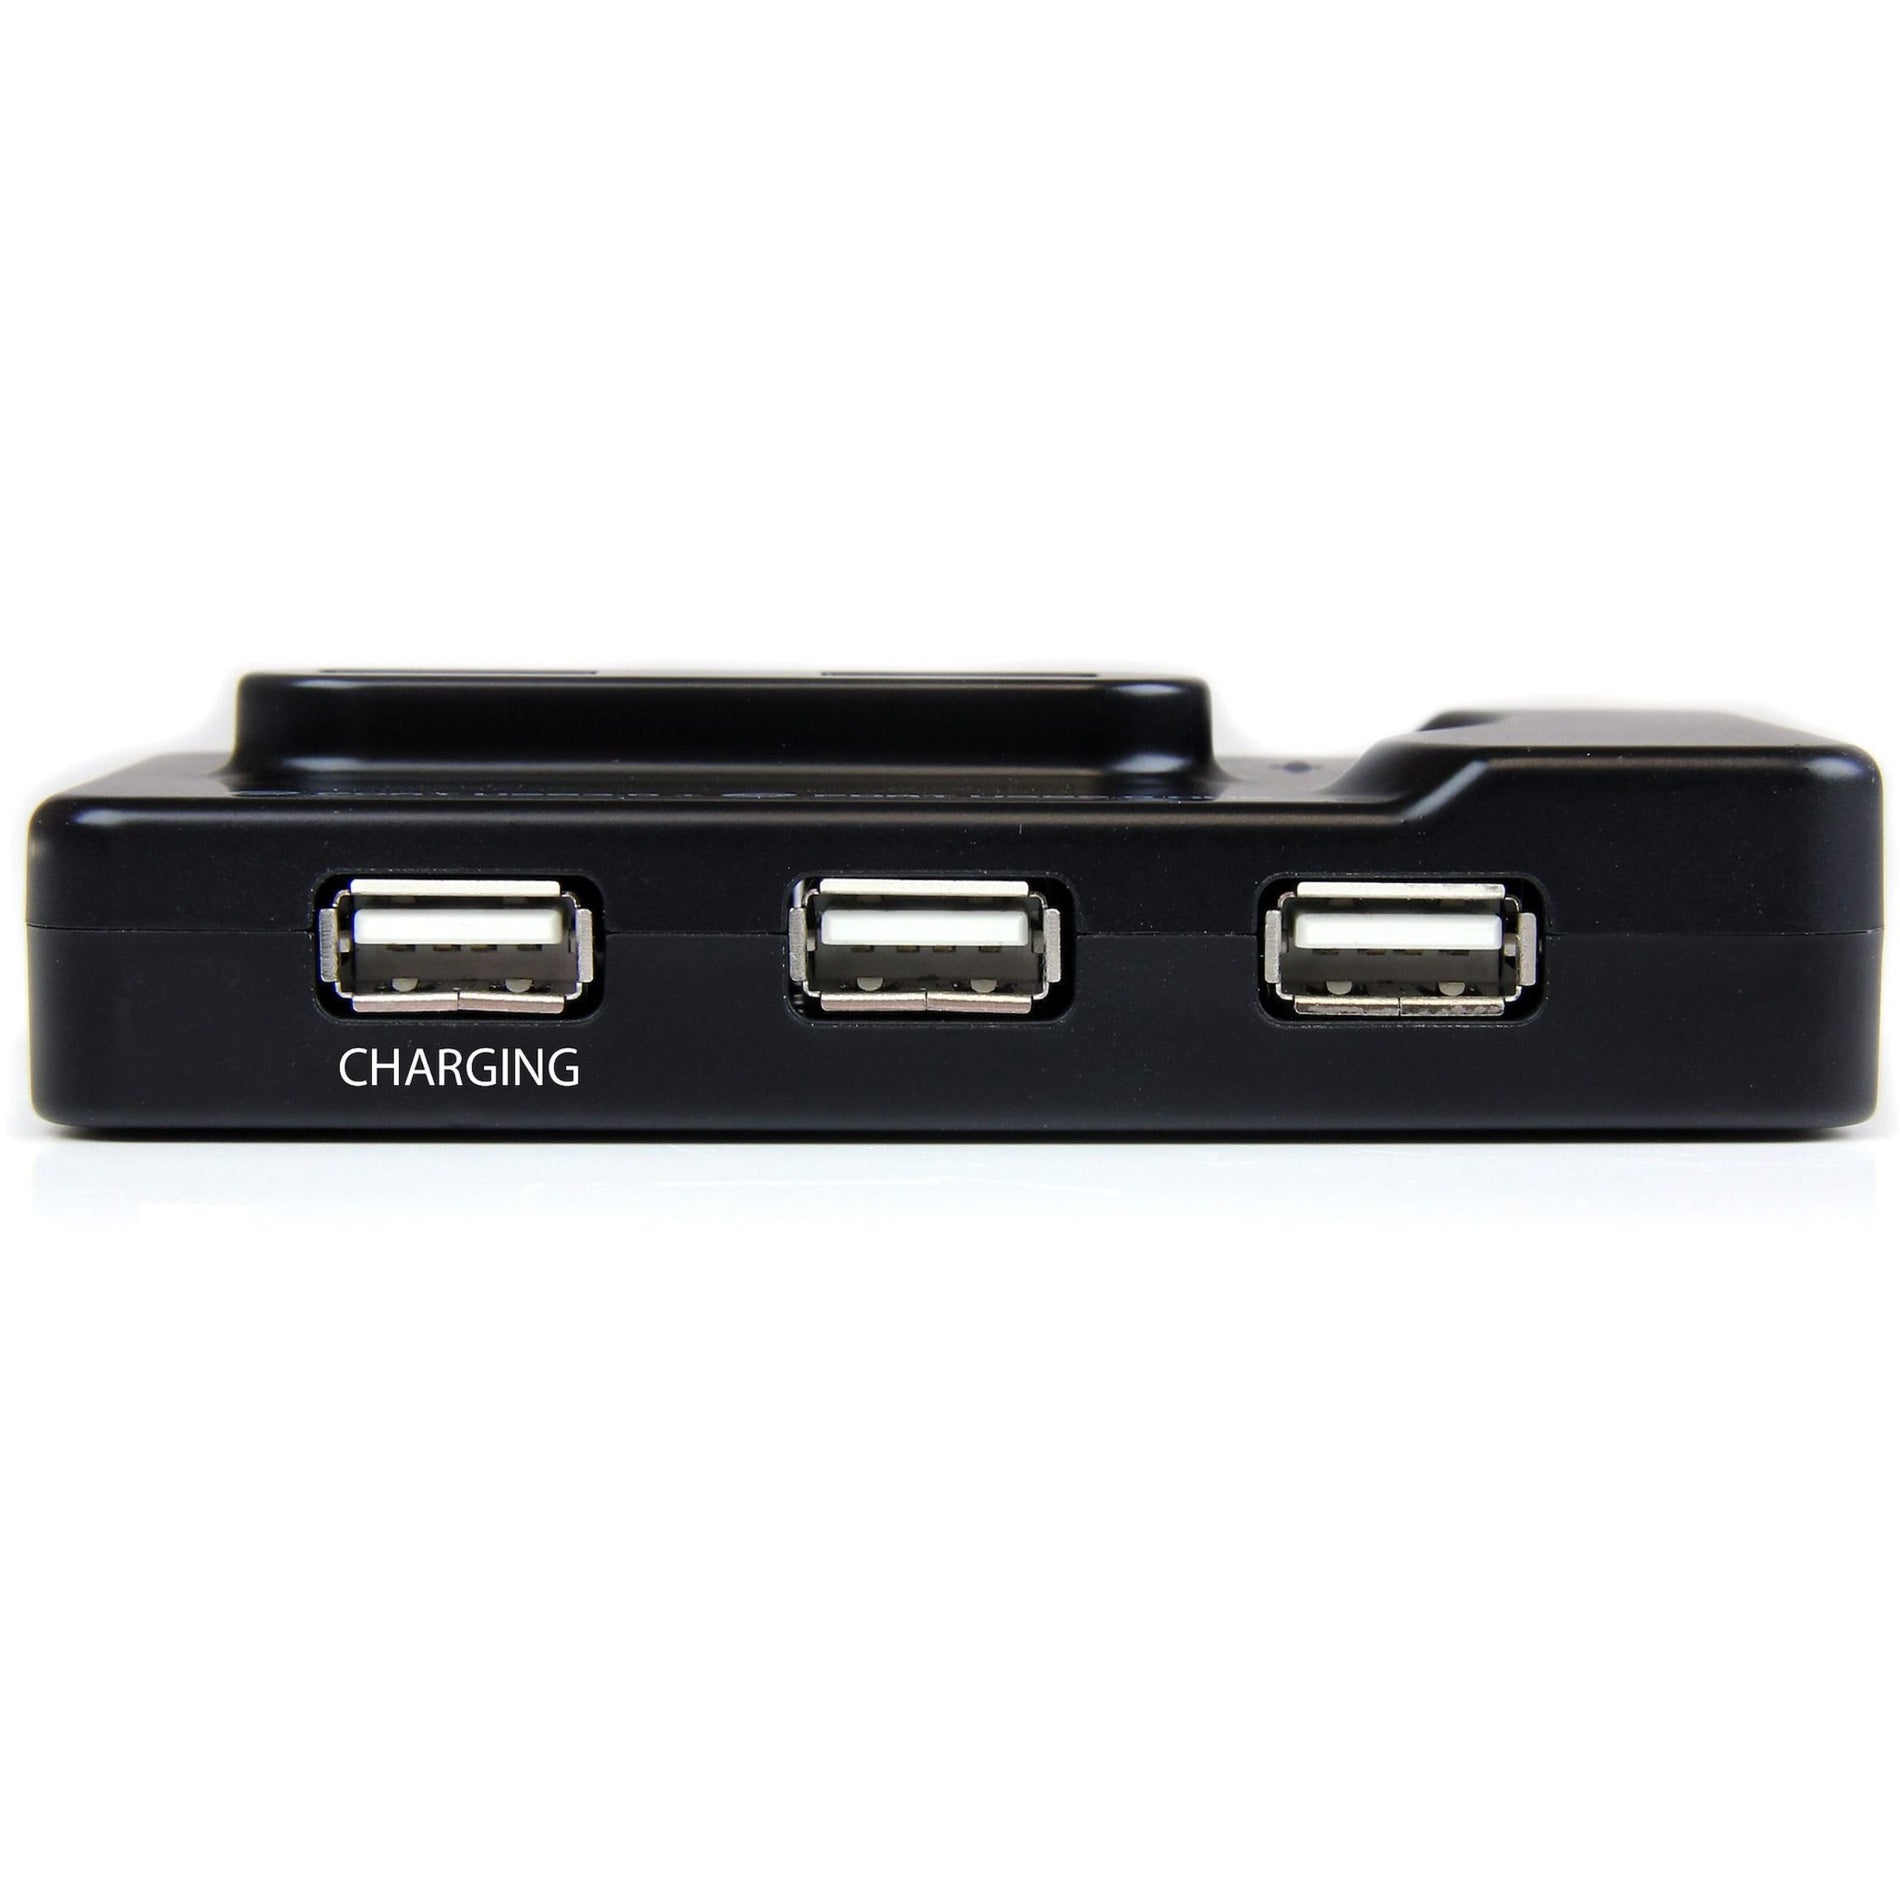 StarTech.com ST7320USBC 6个端口 USB 3.0/2.0 组合集线器带充电端口，扩展您的 USB 连接   星奇科技 星奇科技